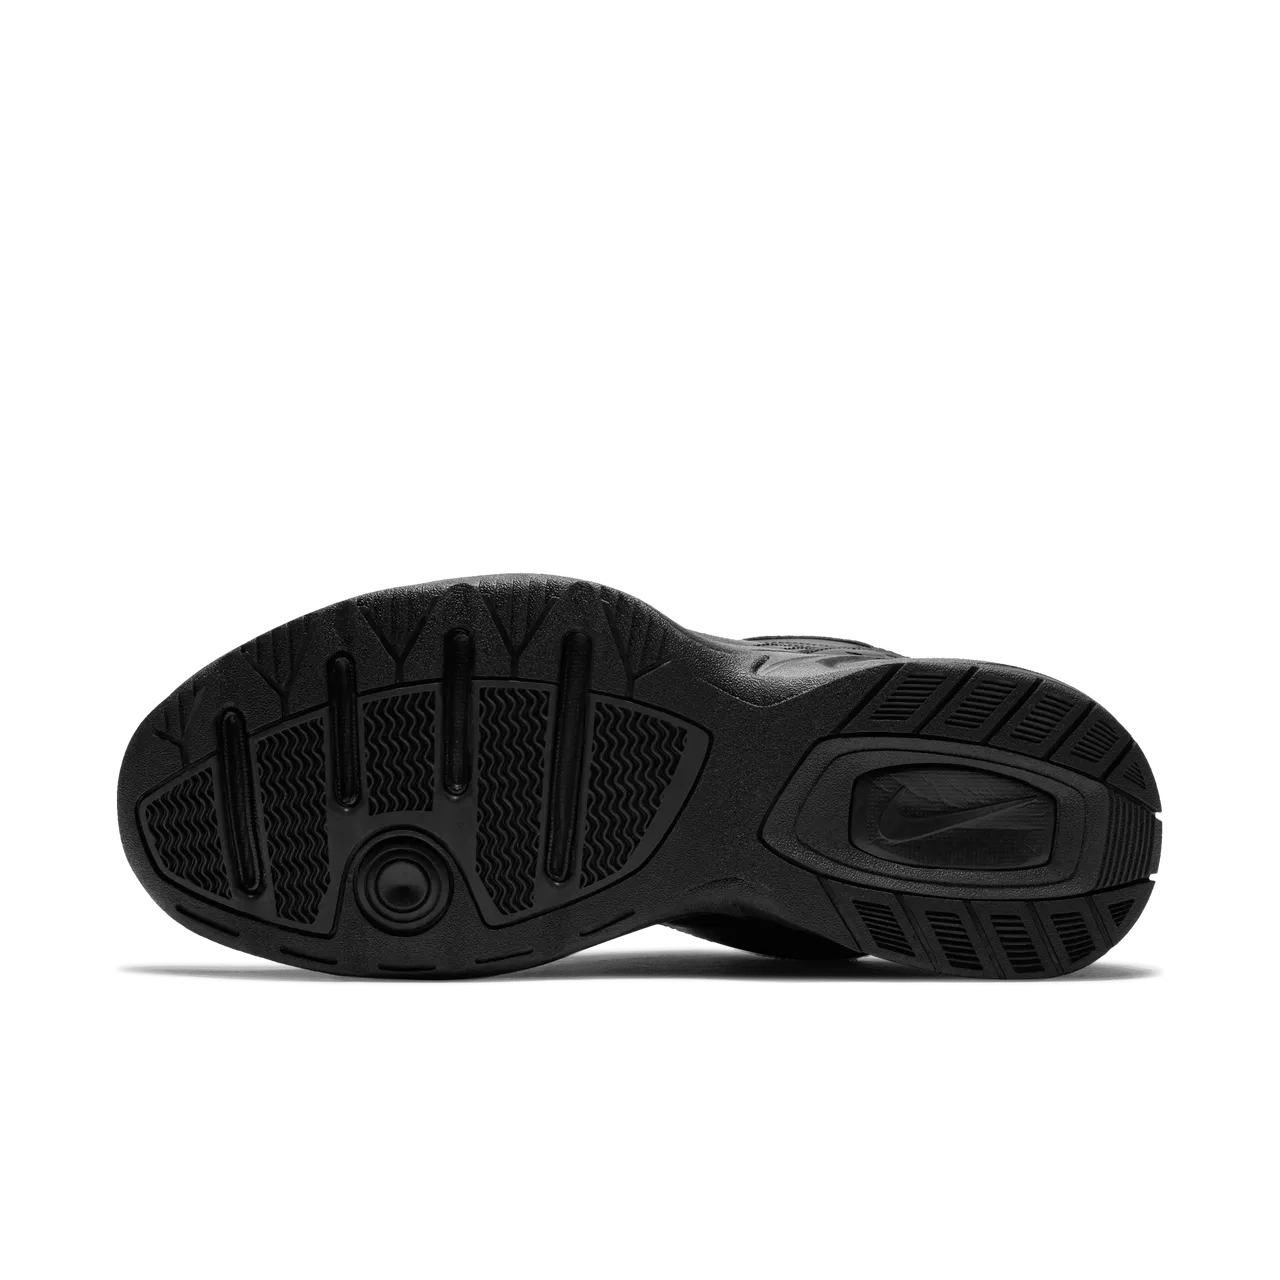 Nike Air Monarch IV work-outschoenen voor heren - Zwart